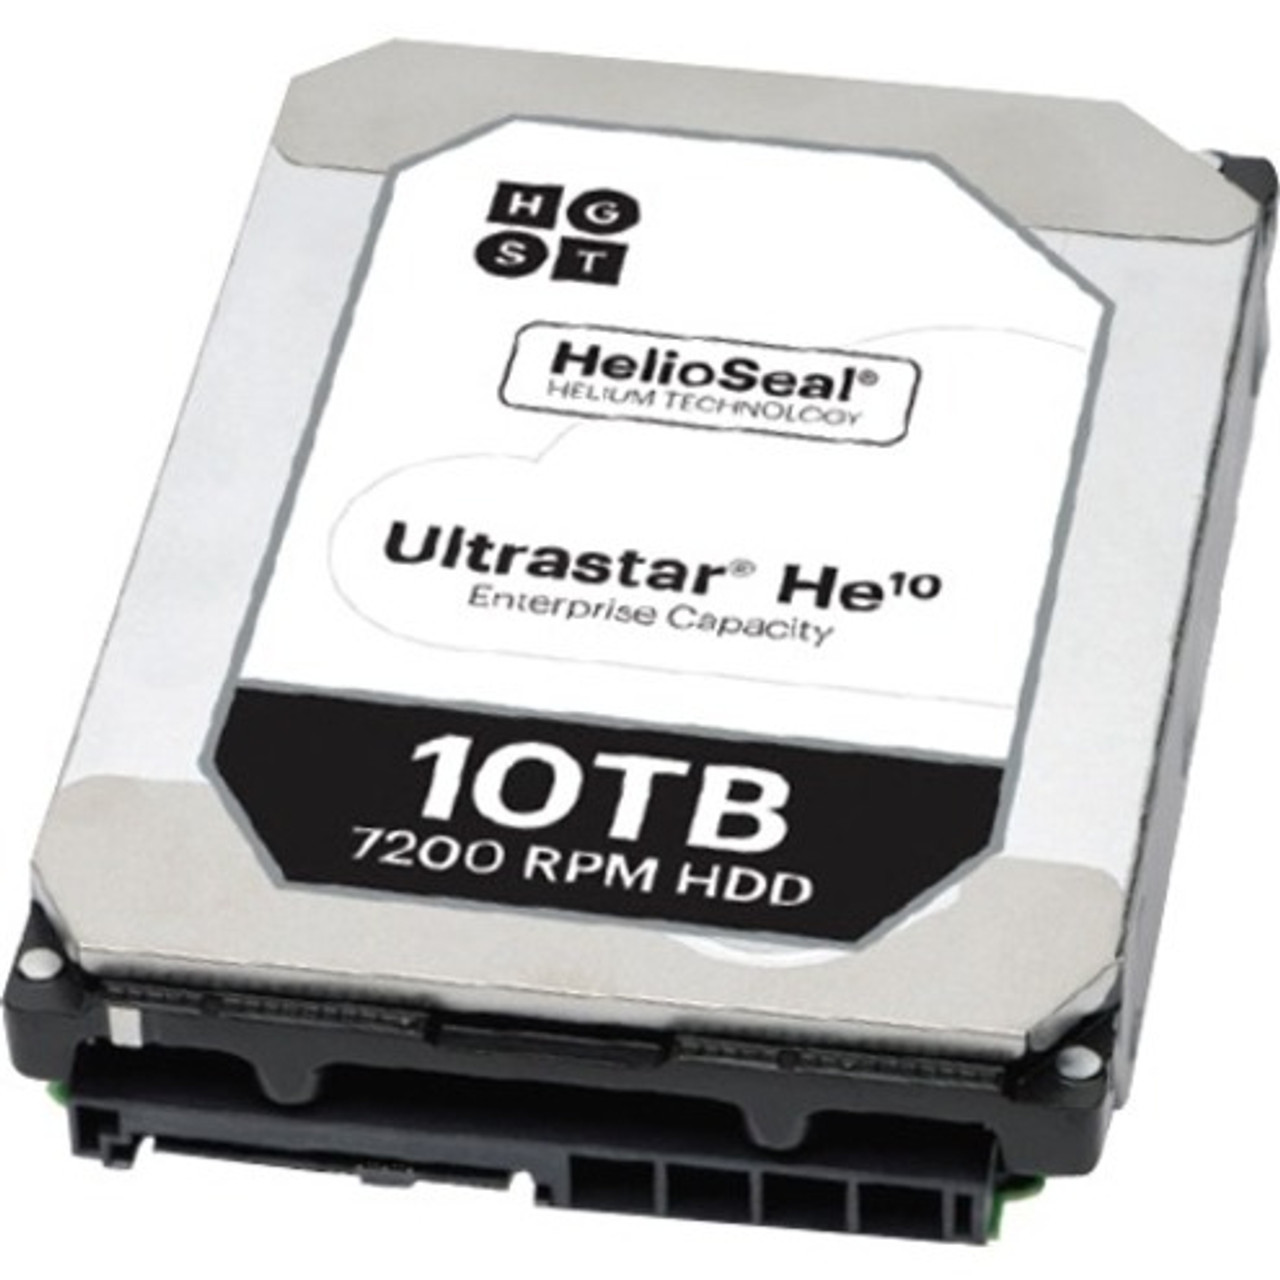 HGST Ultrastar He10 10 TB Hard Drive - Internal - SAS